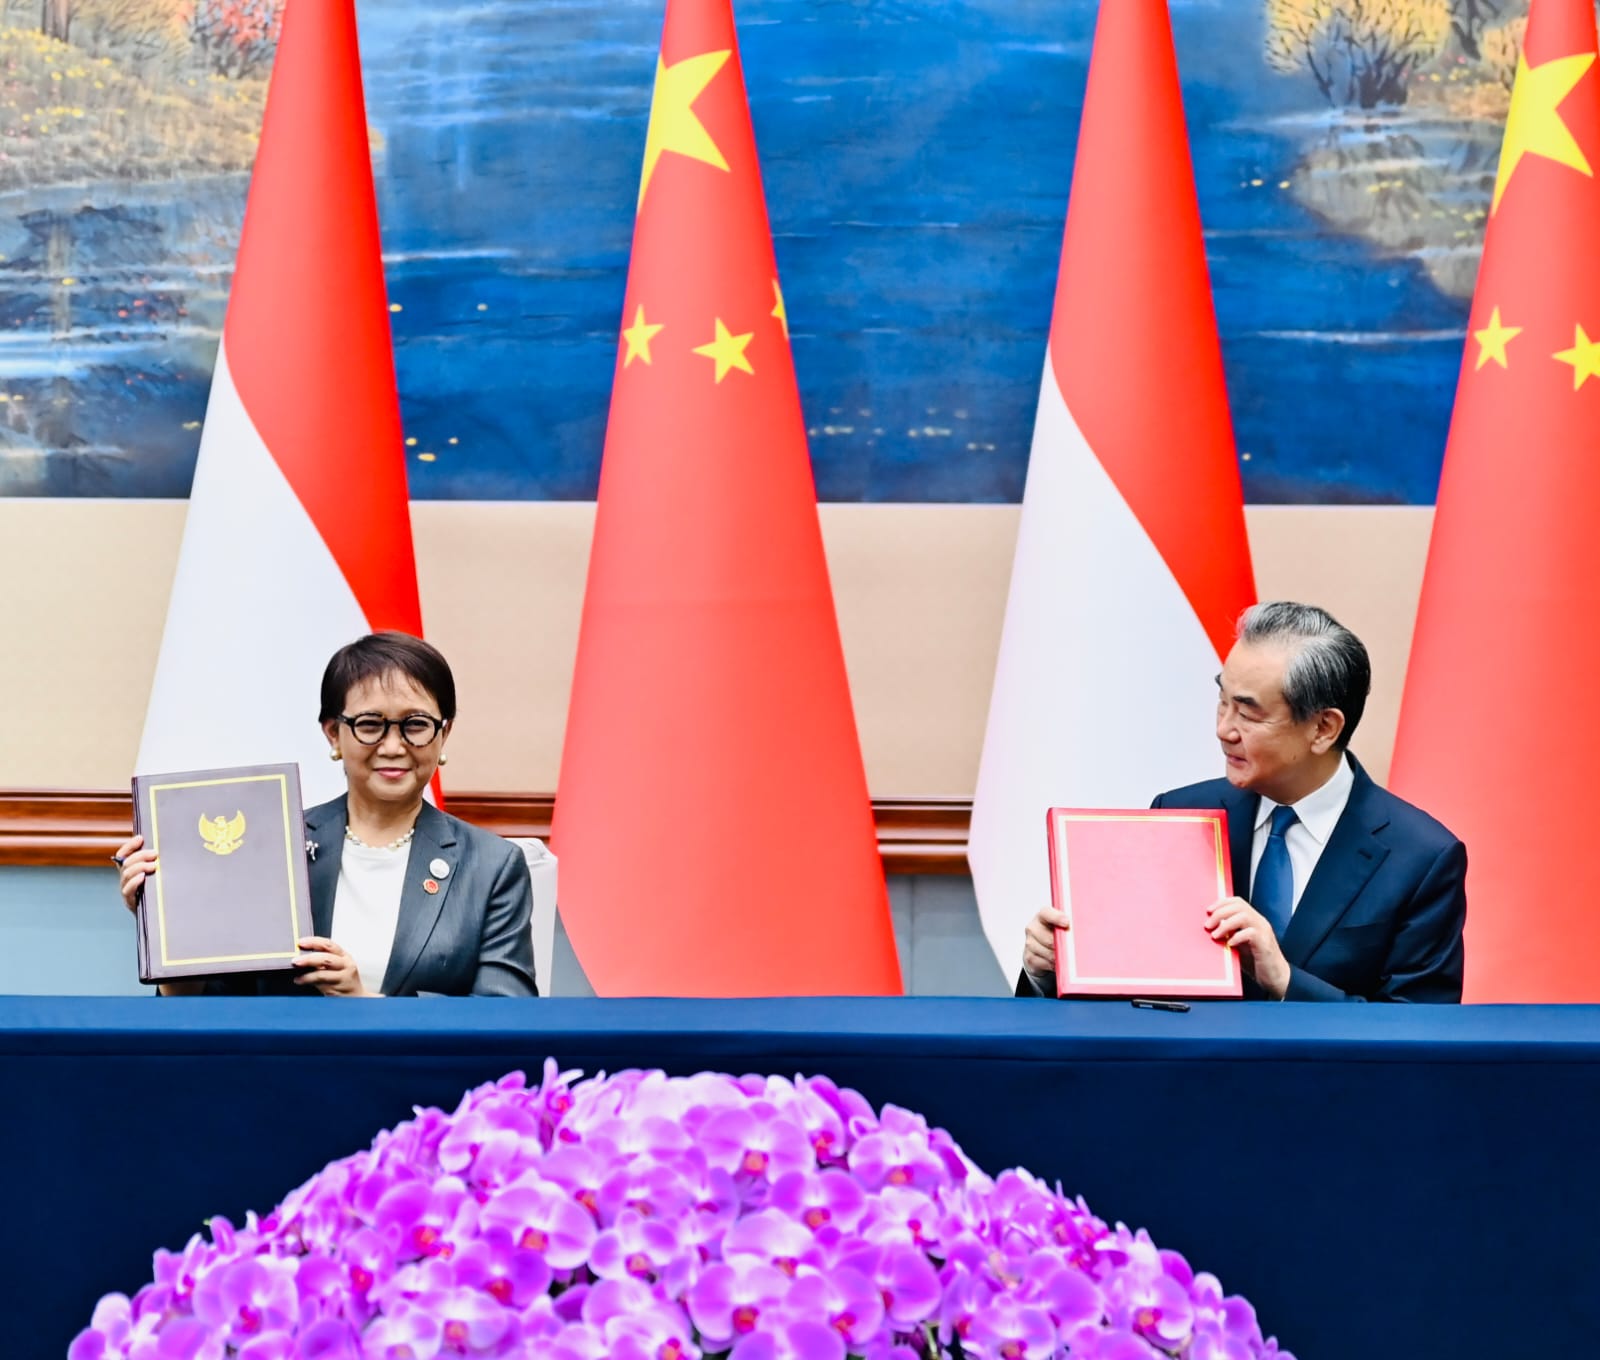 Pertemuan Jokowi dan Xi Jinping Hasilkan 8 MoU, Termasuk Pendidikan Bahasa China 1